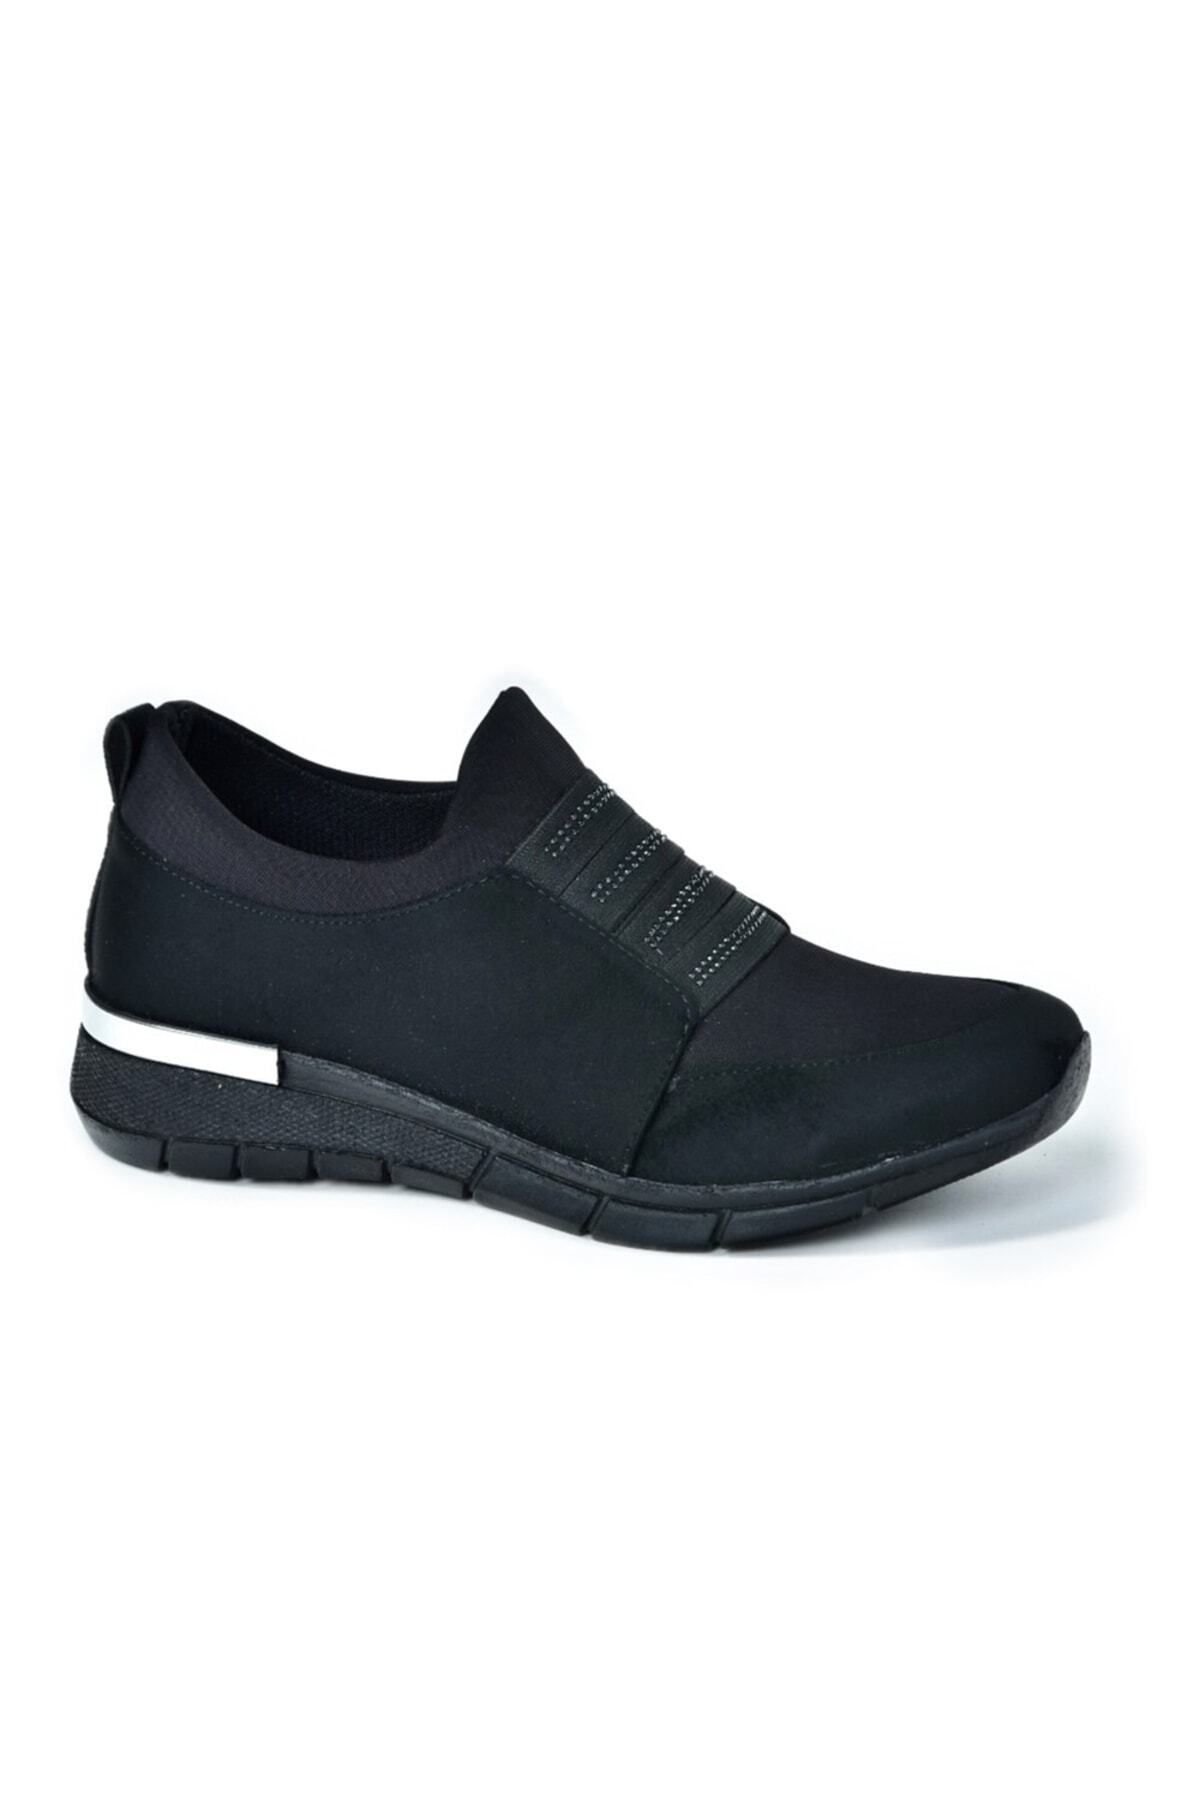 Fox Shoes Siyah Kadın Spor Ayakkabı F274040302